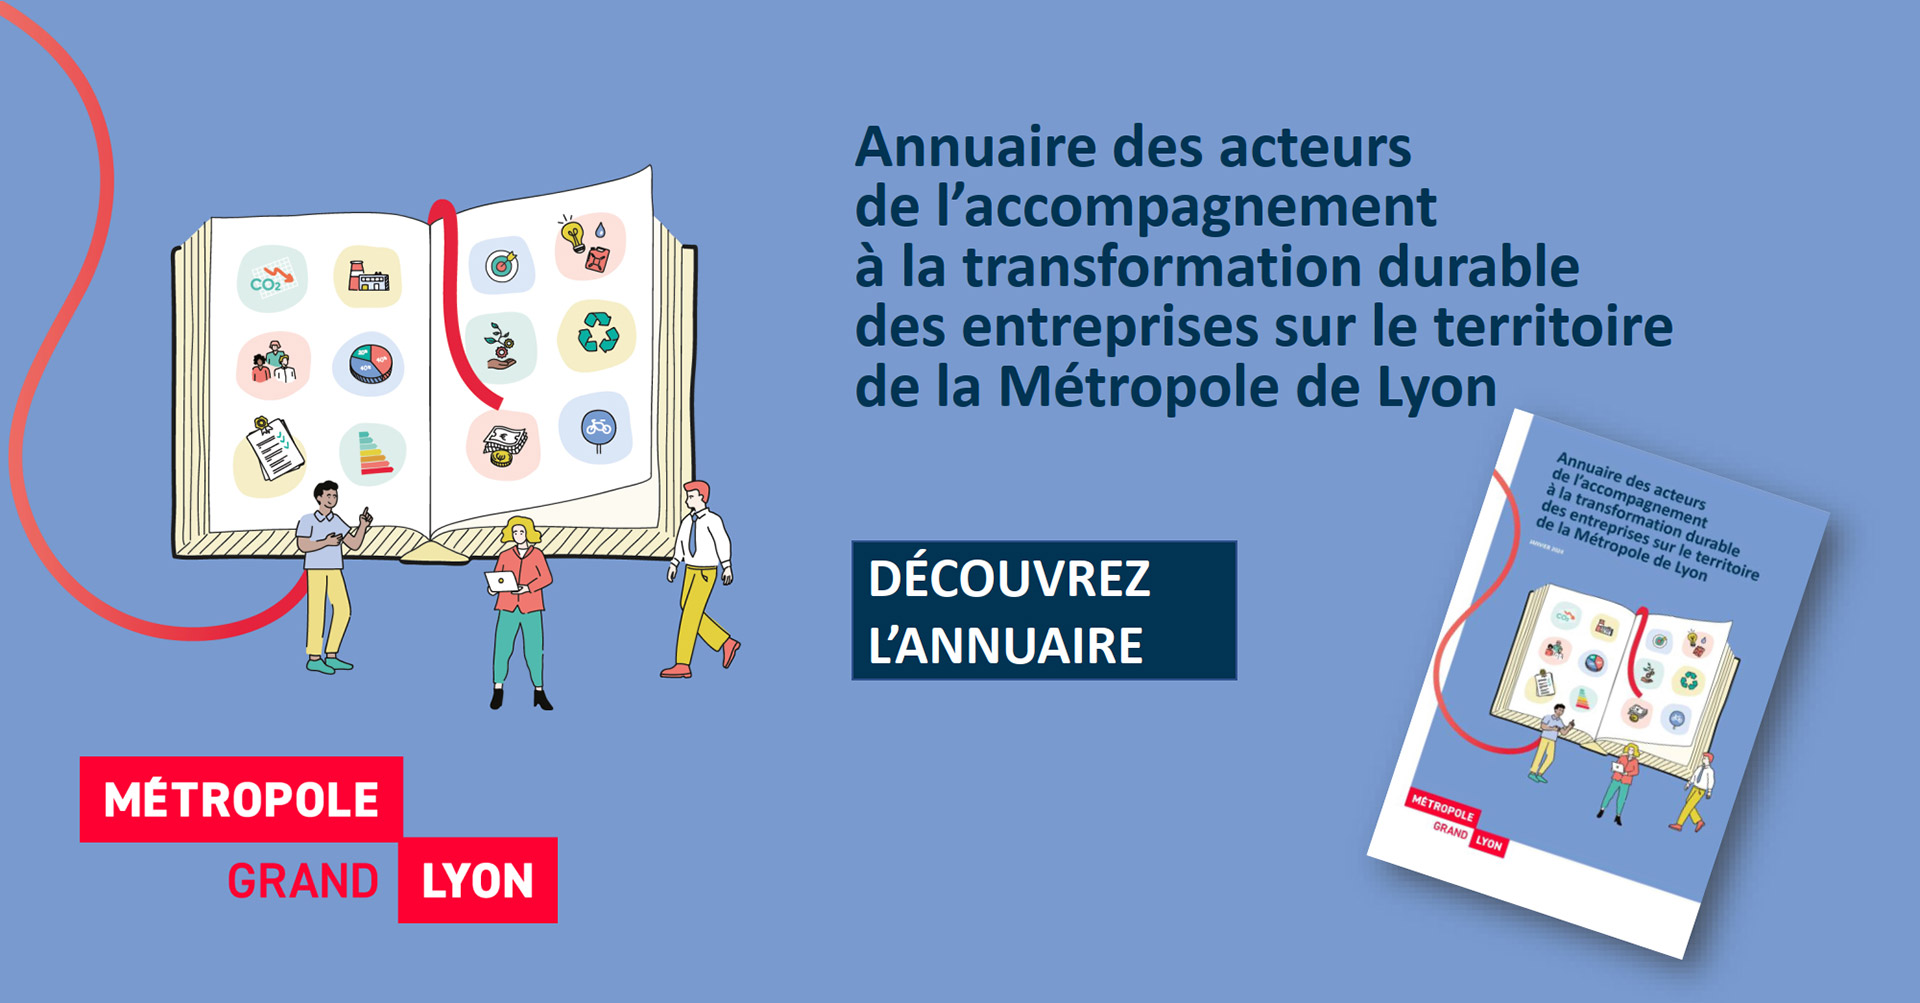 Découvrez l'Annuaire des acteurs de l’accompagnement à la transformation durable des entreprises sur le territoire de la Métropole de Lyon